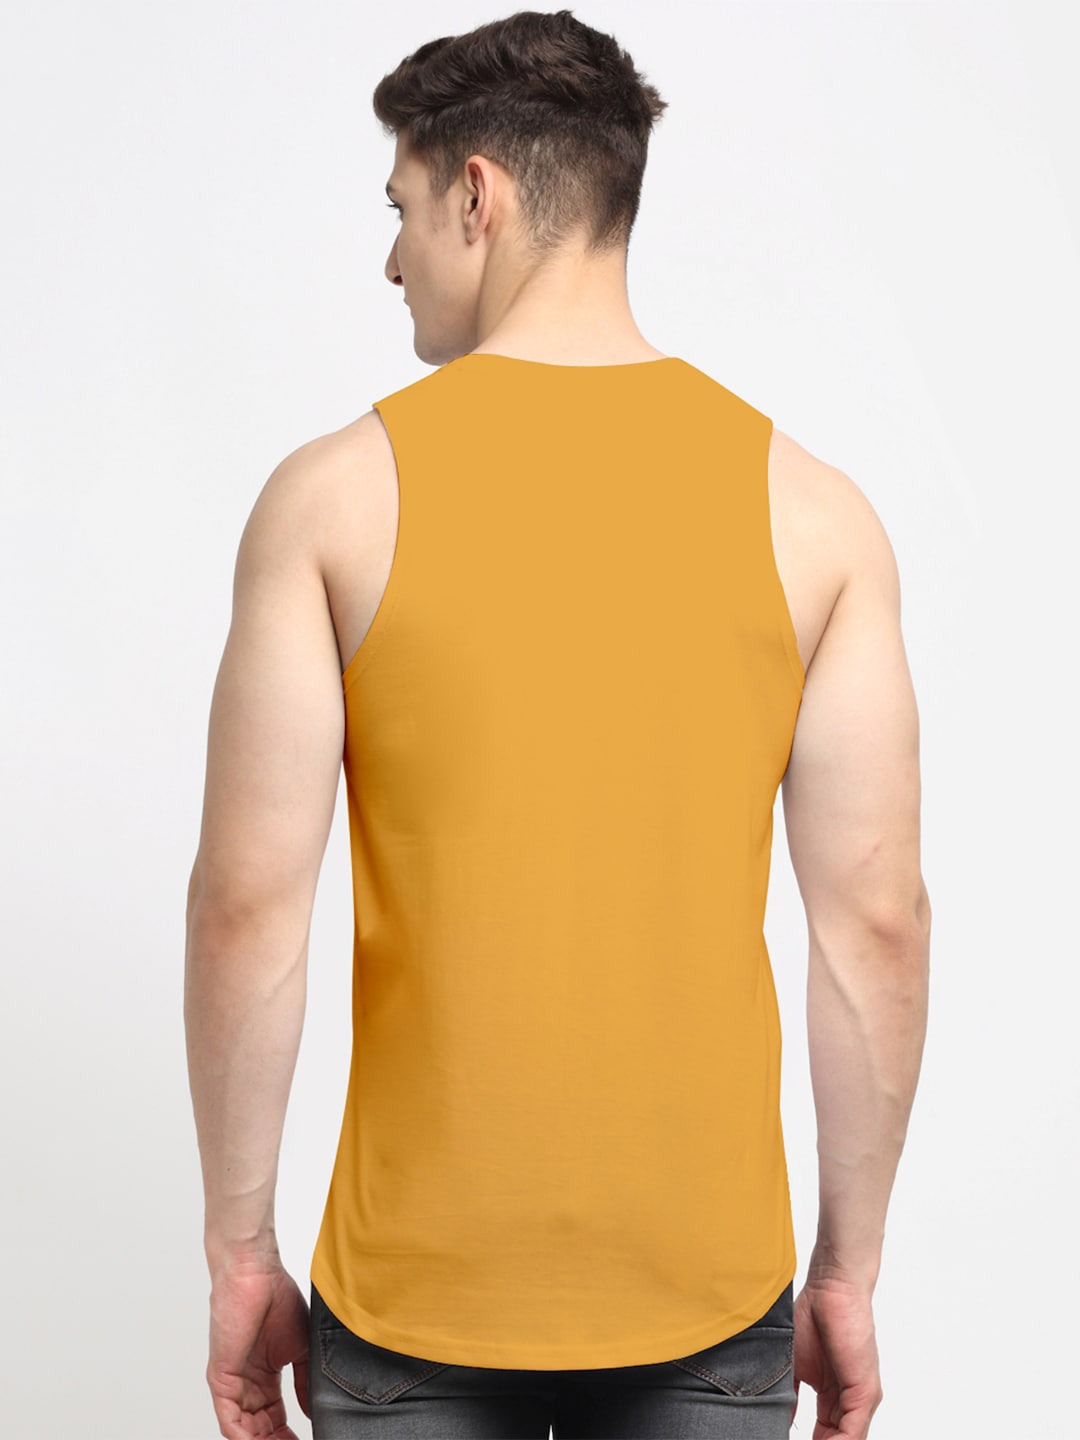 Clothing Innerwear Vests | Friskers Men Mustard Printed Innerwear Vests - NQ78764